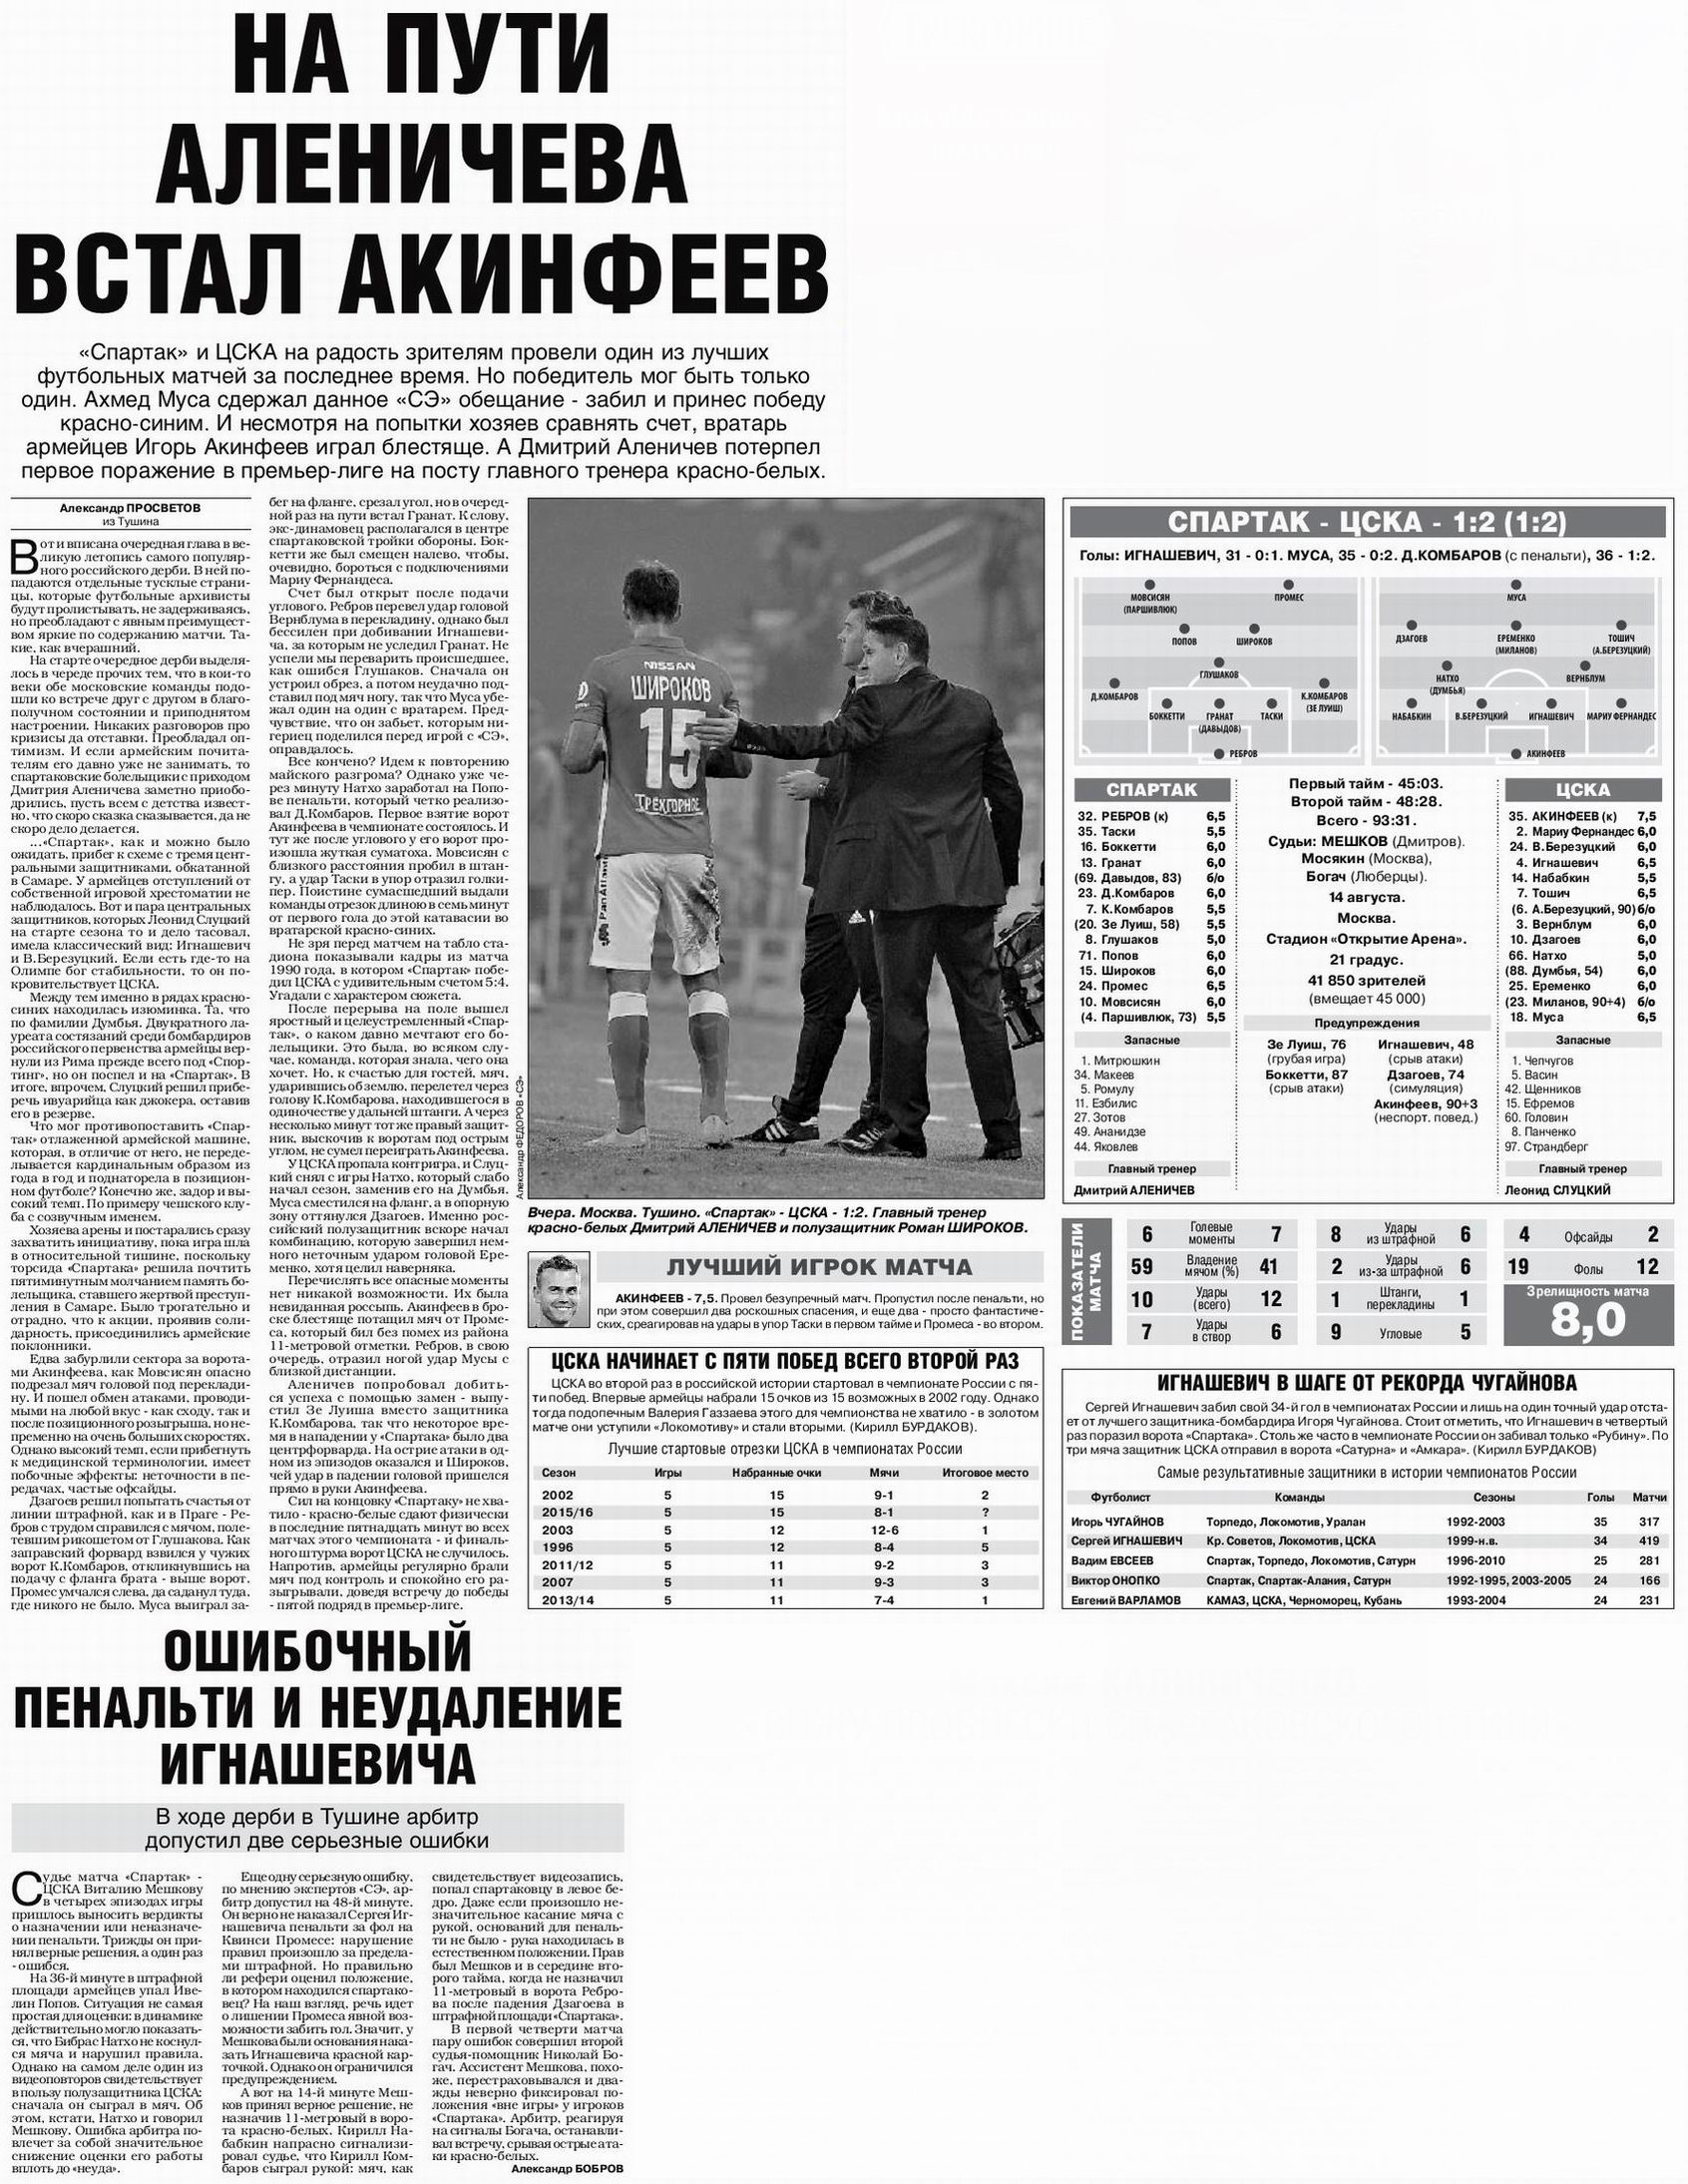 2015-08-14.SpartakM-CSKA.1